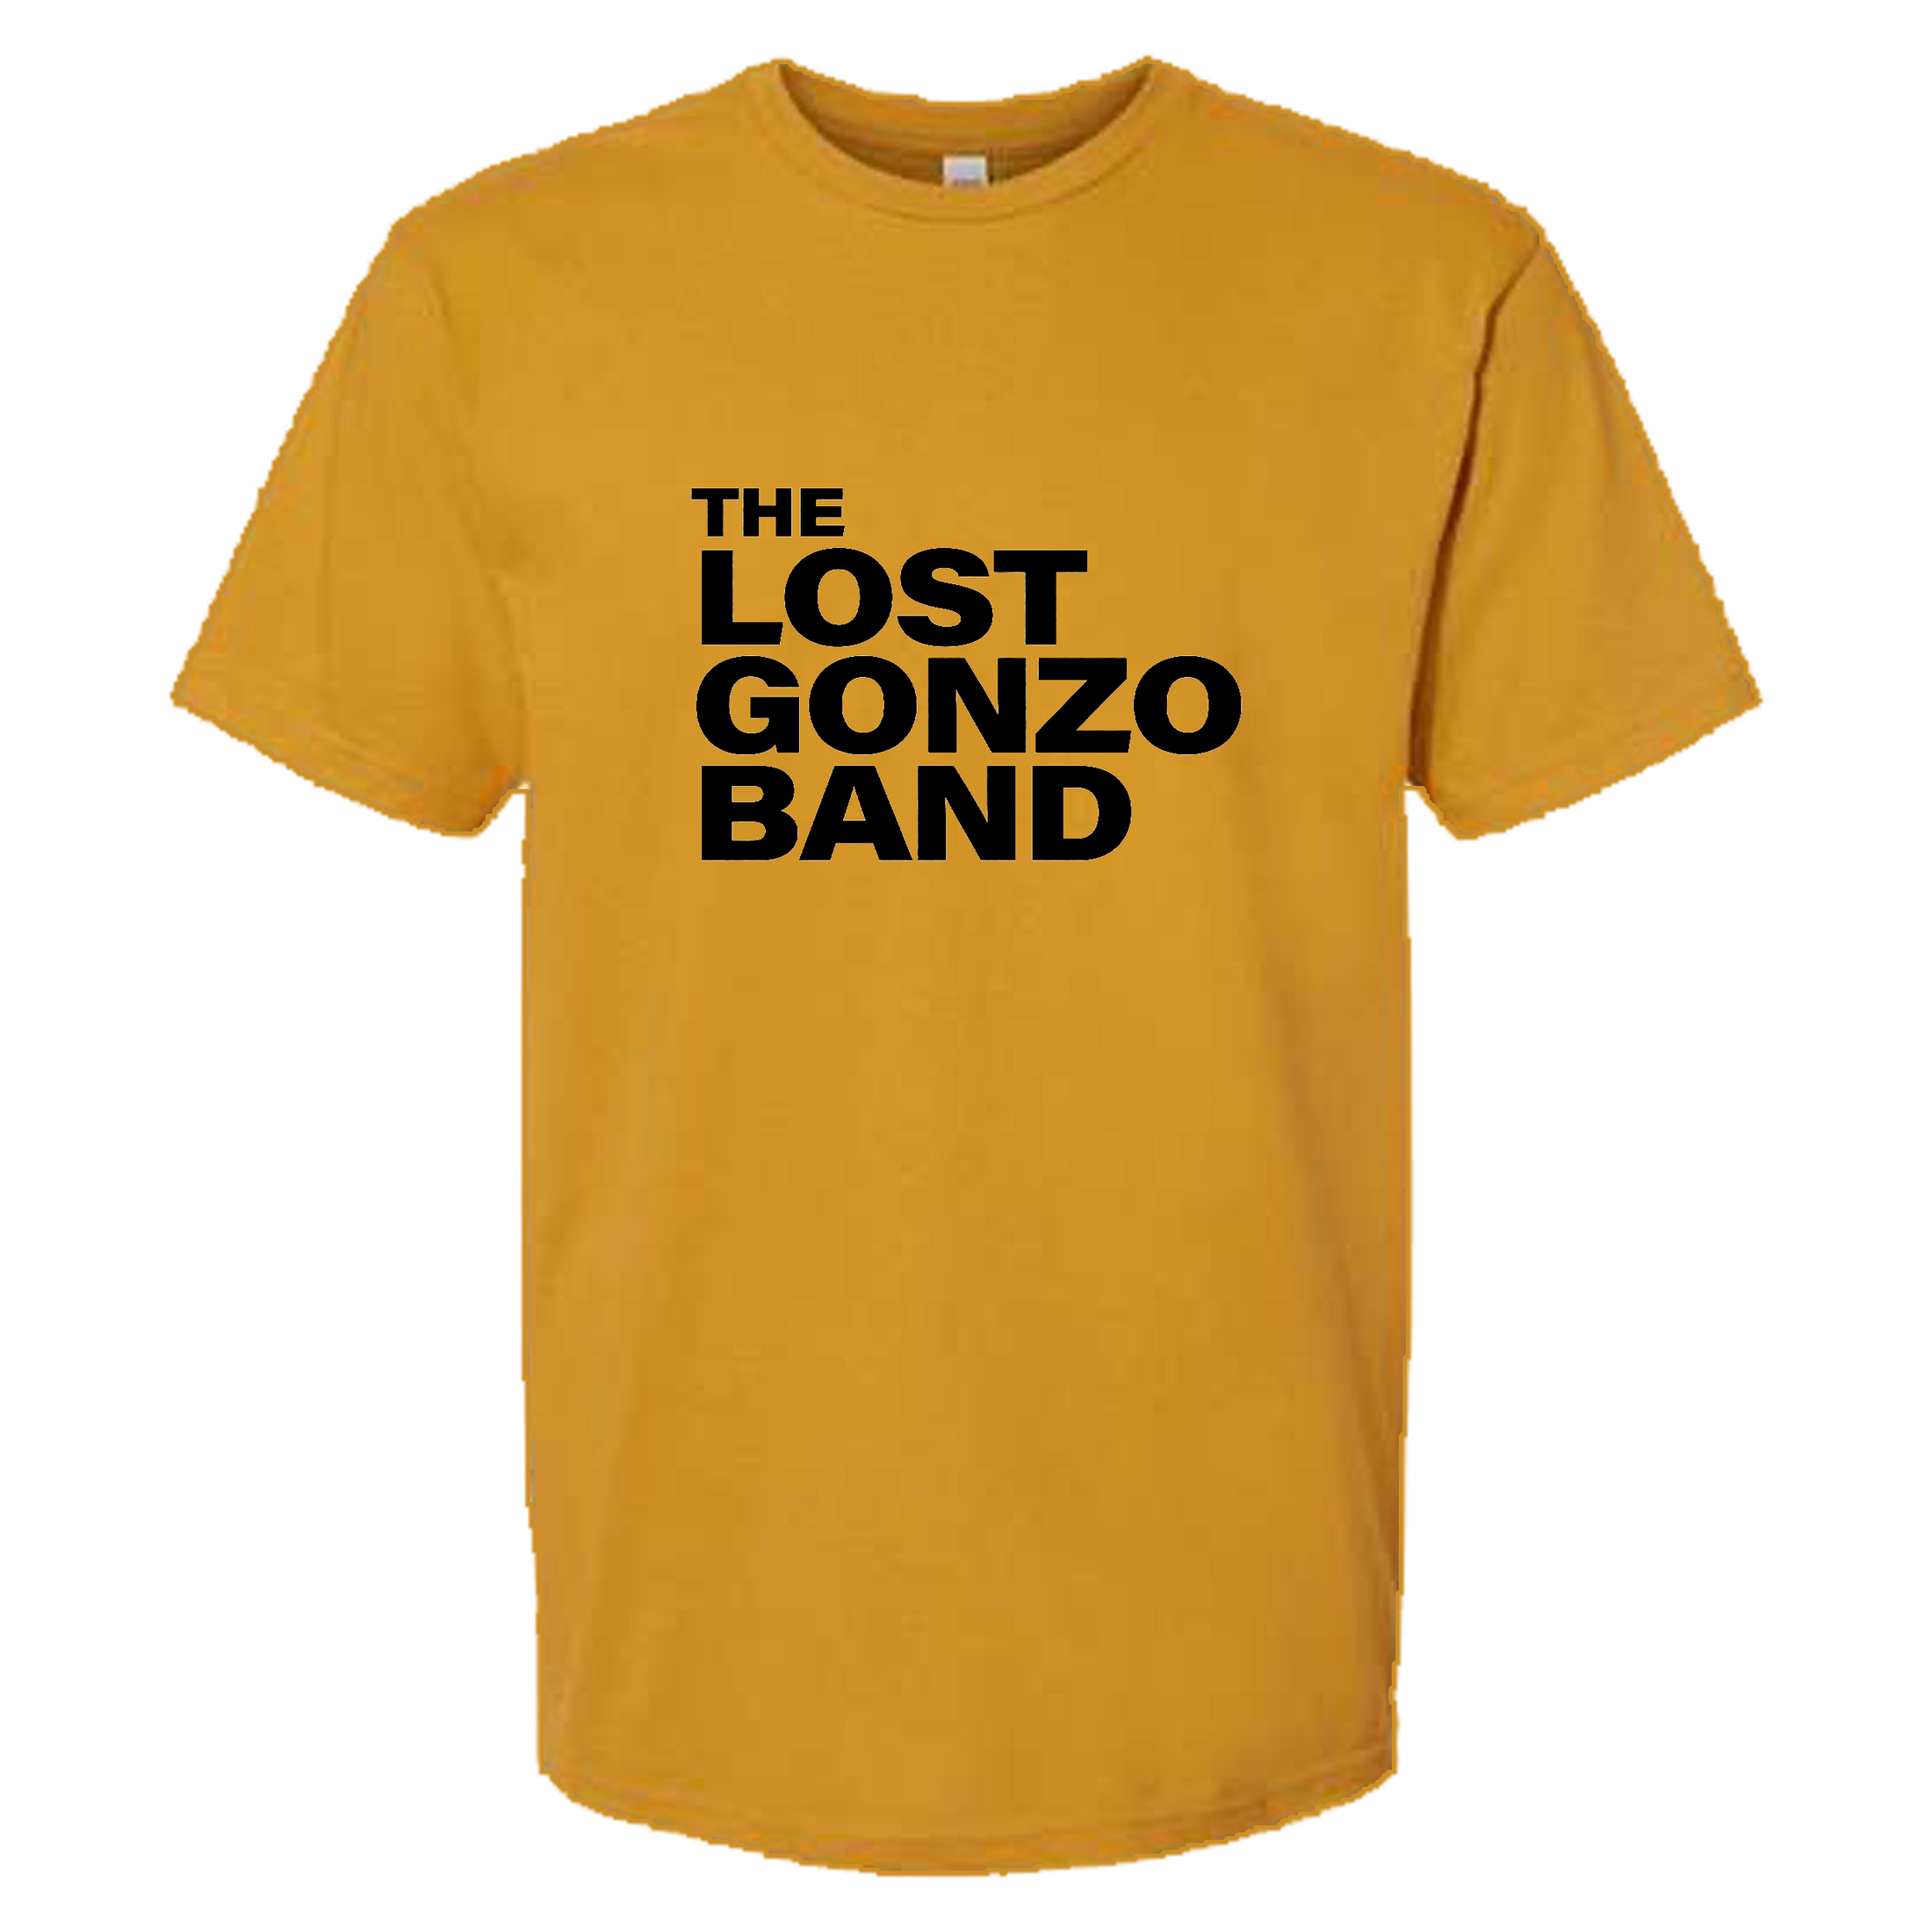 gonzoshirt-gold-black_2200x.png